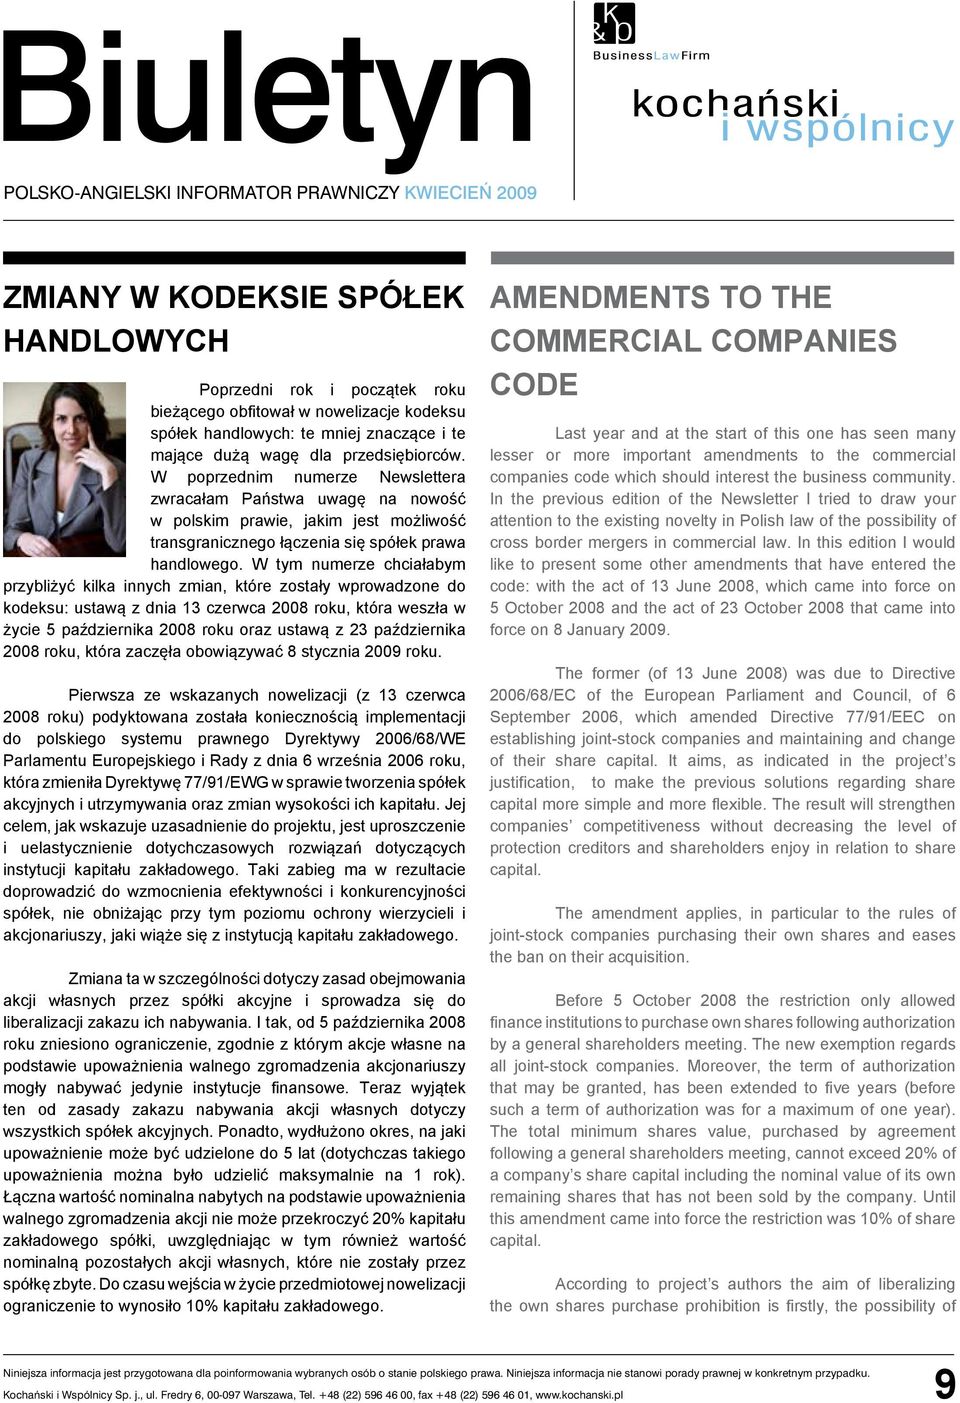 W poprzednim numerze Newslettera zwracałam Państwa uwagę na nowość w polskim prawie, jakim jest możliwość transgranicznego łączenia się spółek prawa handlowego.